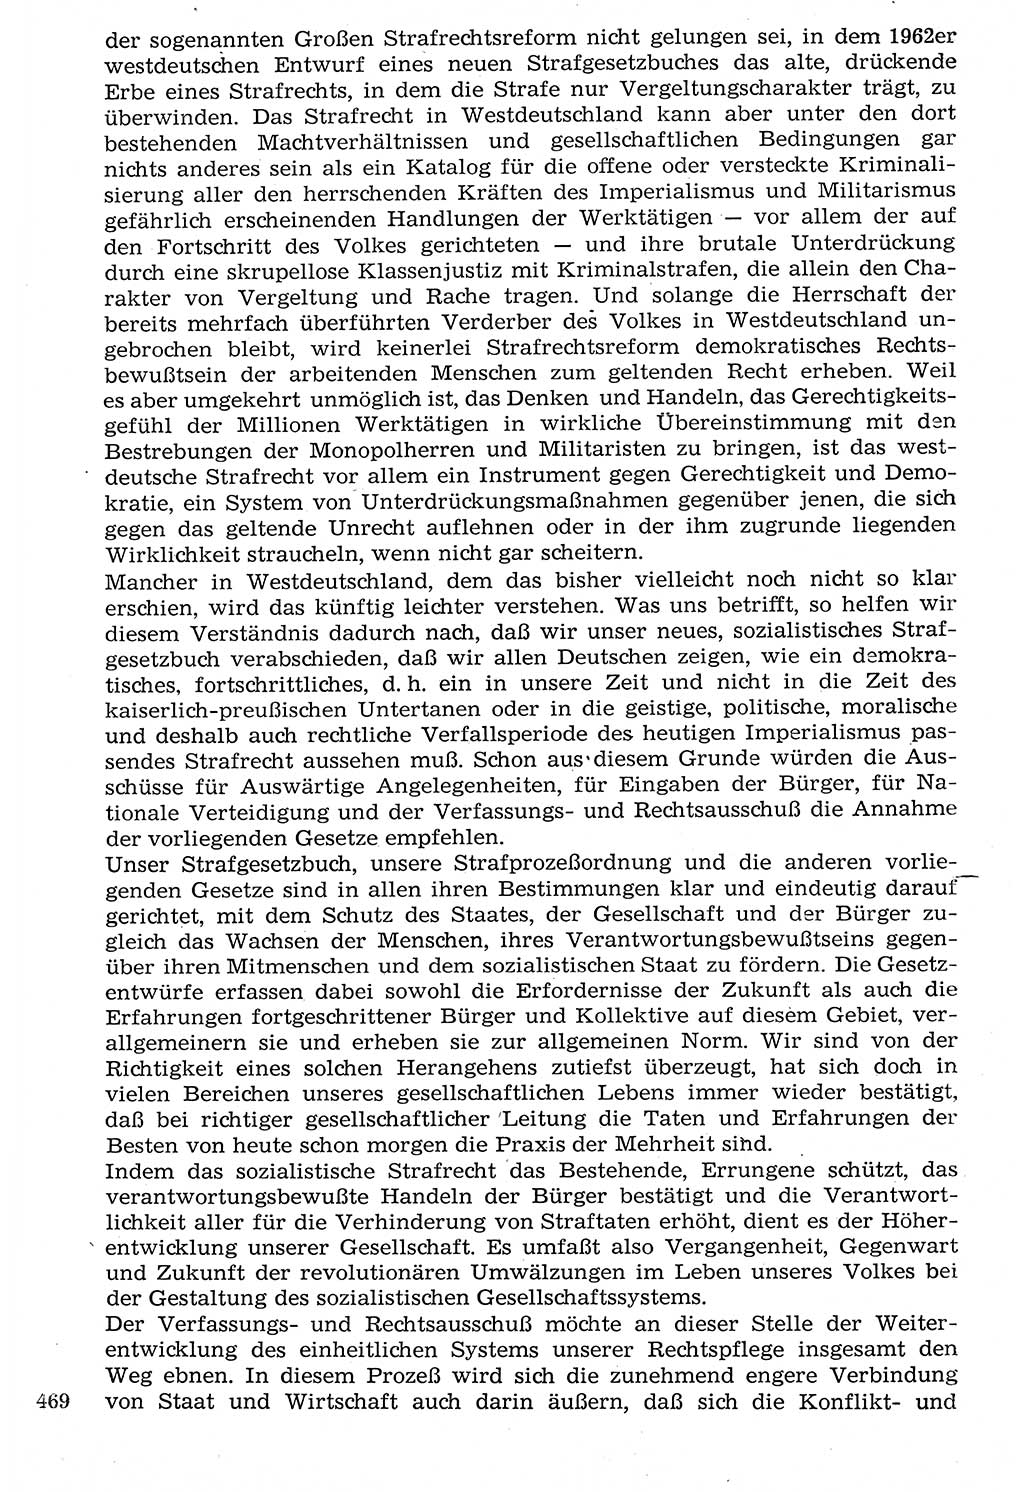 Staat und Recht (StuR), 17. Jahrgang [Deutsche Demokratische Republik (DDR)] 1968, Seite 469 (StuR DDR 1968, S. 469)